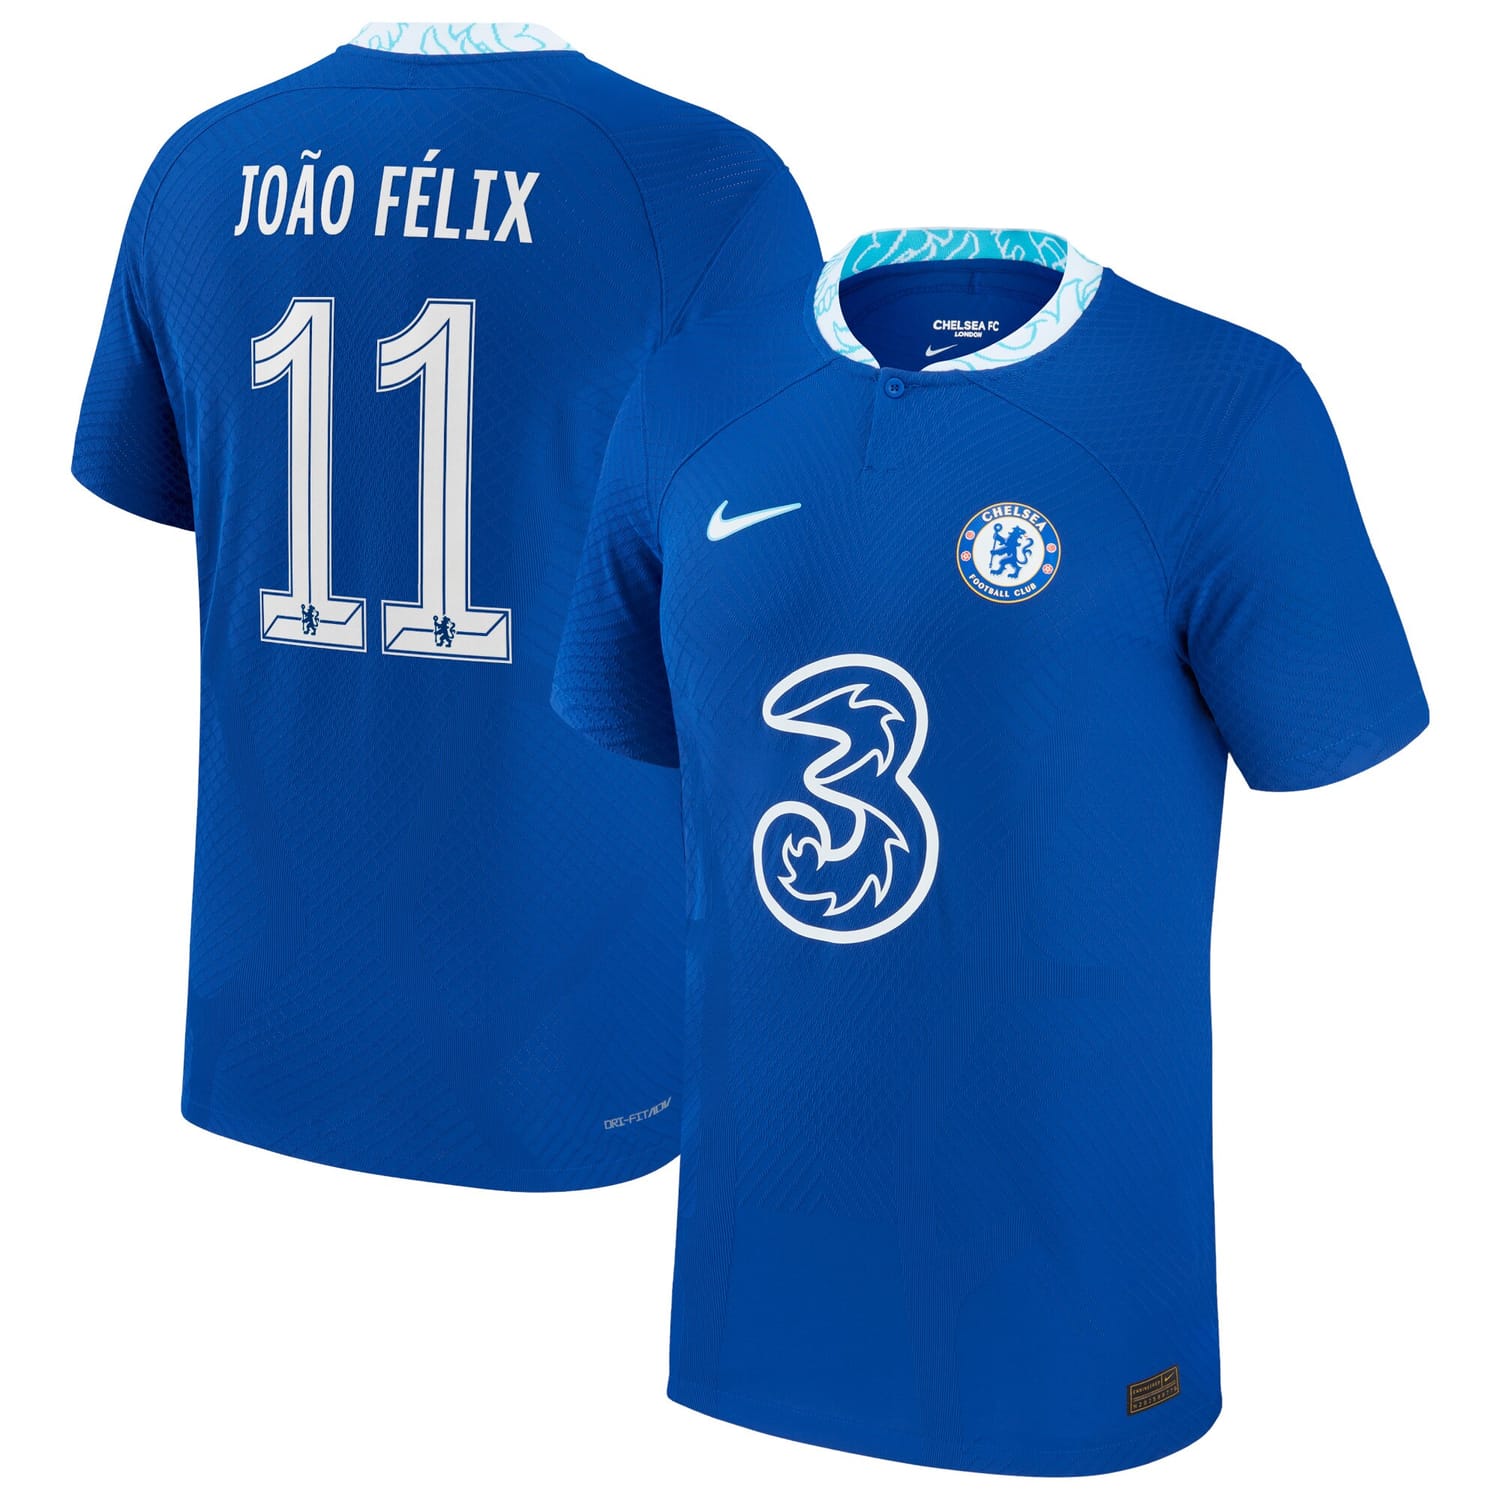 Premier League Chelsea Home Cup Authentic Jersey Shirt 2022-23 player João Félix 11 printing for Men